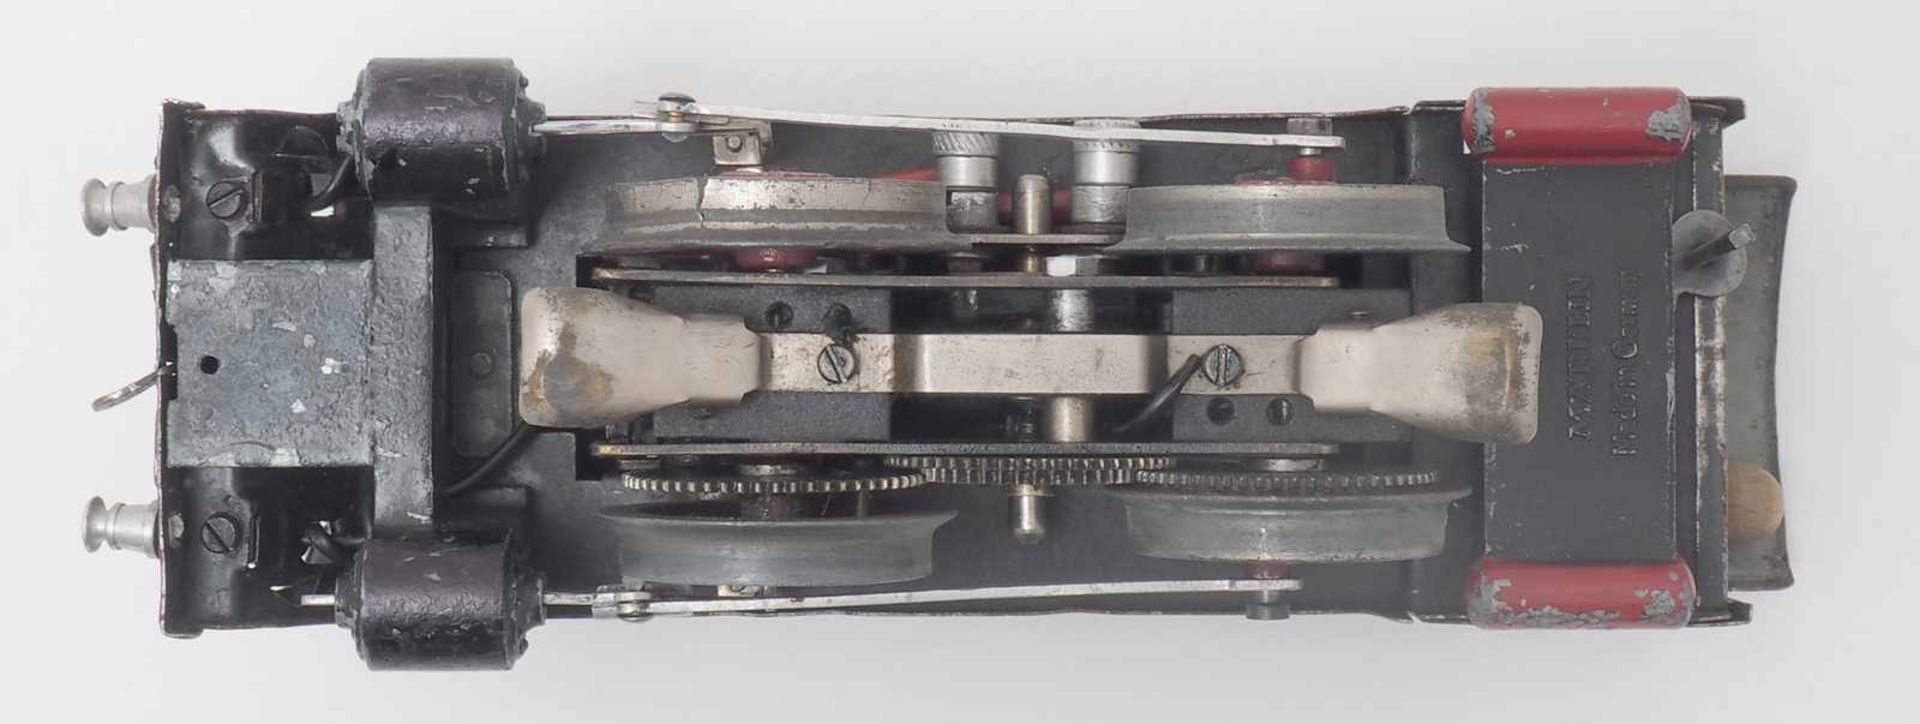 Märklin DampflokSpur 0, 1930-er Jahre. Elektroantrieb. Zweiachsige Dampflokomotive mit passendem - Image 6 of 9